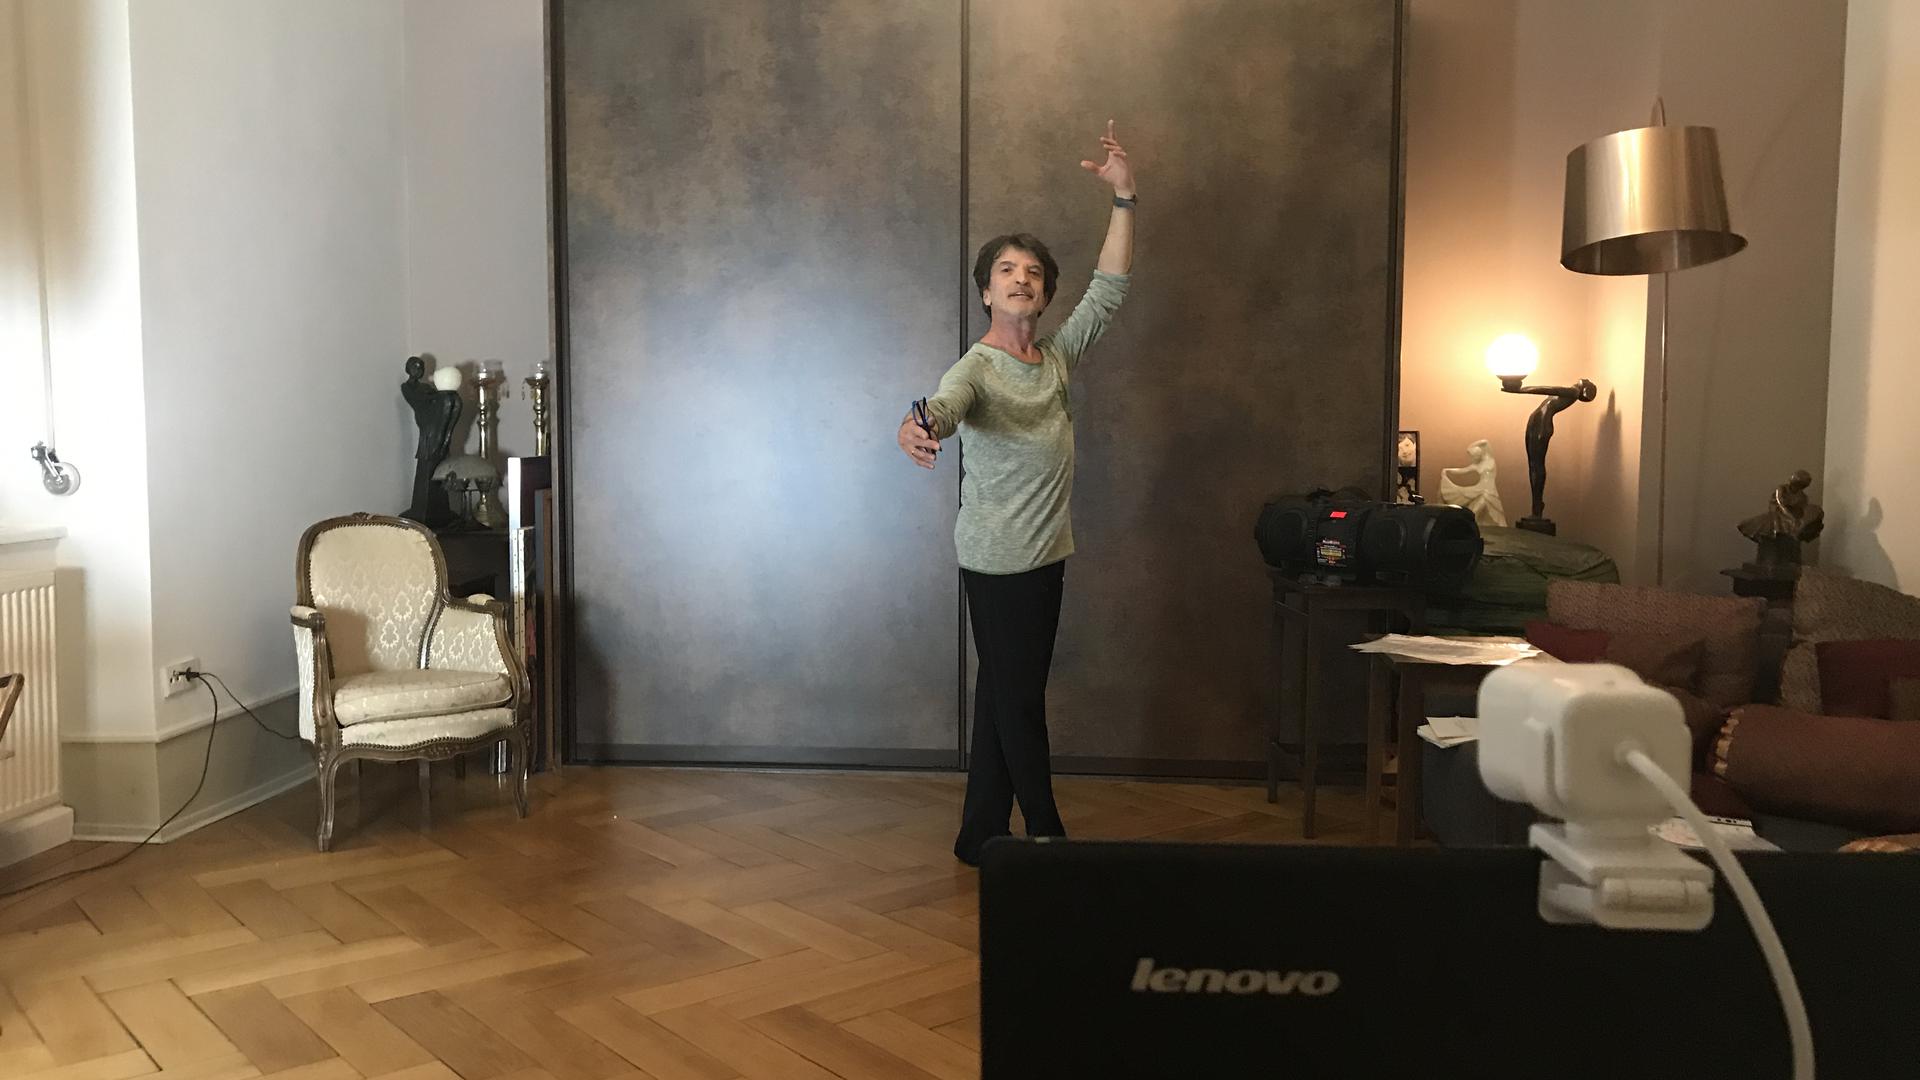 Das Wohnzimmer bleibt das Tanzstudio: Francis Meylemans macht seinen Ballettunterricht im eigenen Zuhause, genau wie seine Schüler. Wann er sie wieder persönlich im Studio in Ettlingen empfangen darf, ist unklar.